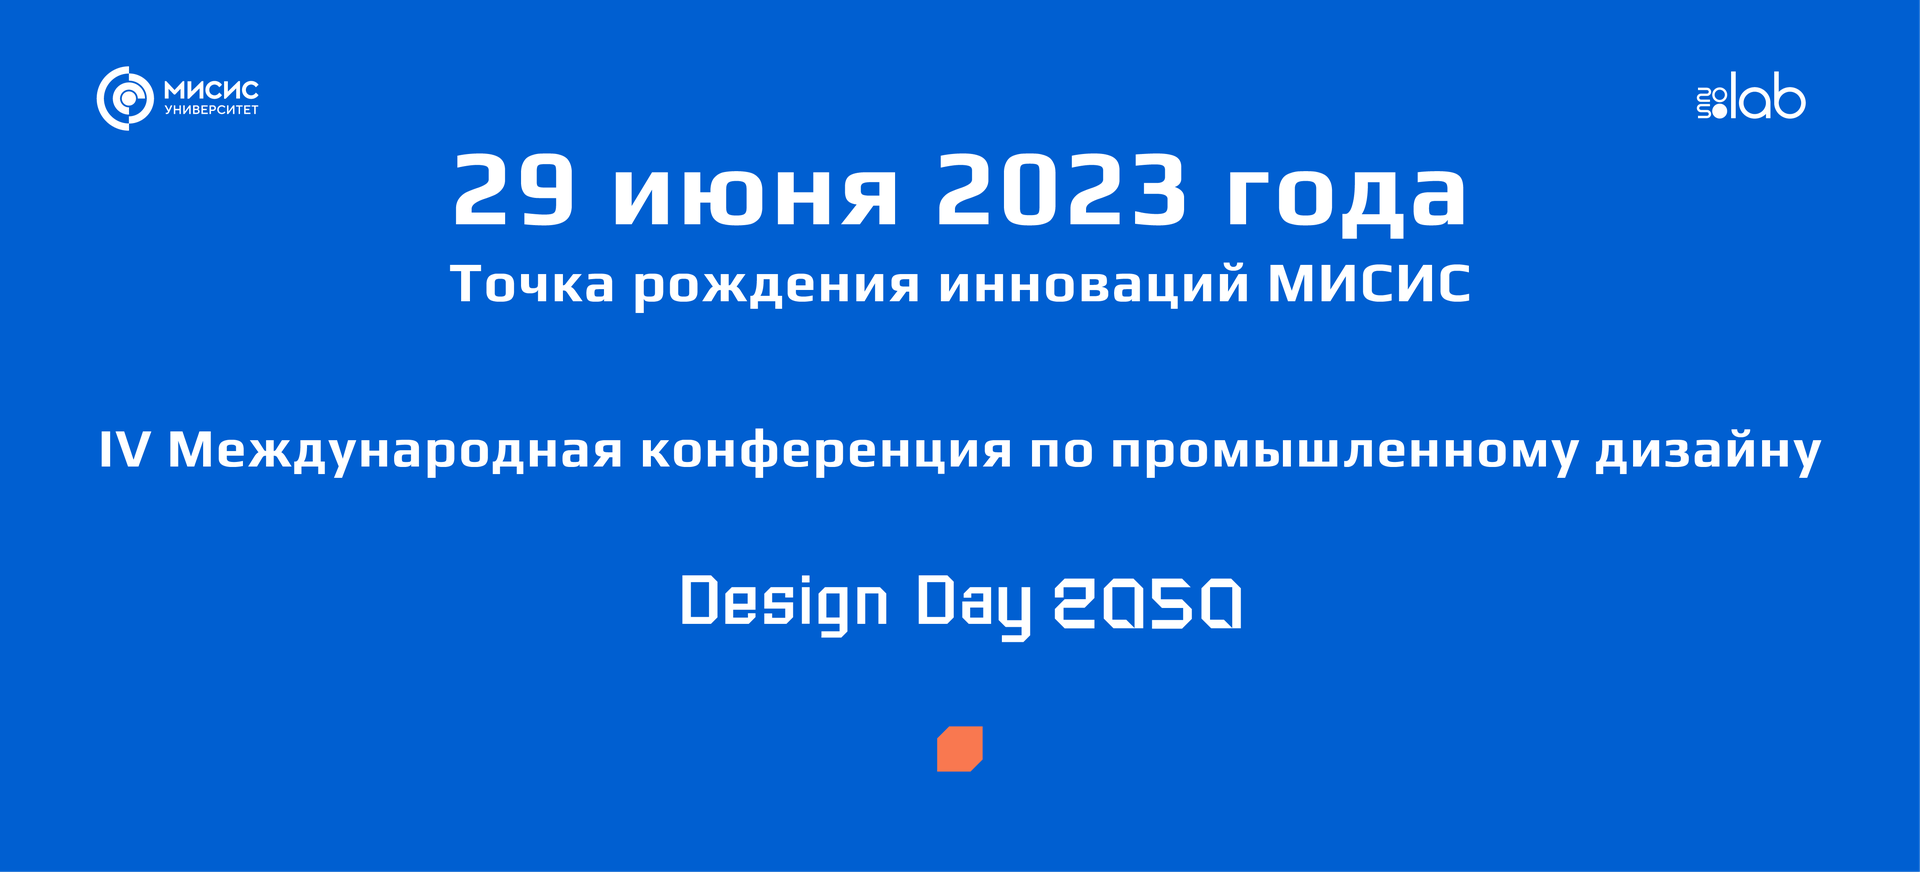 Design Day 2050 покажет дизайн в действии!